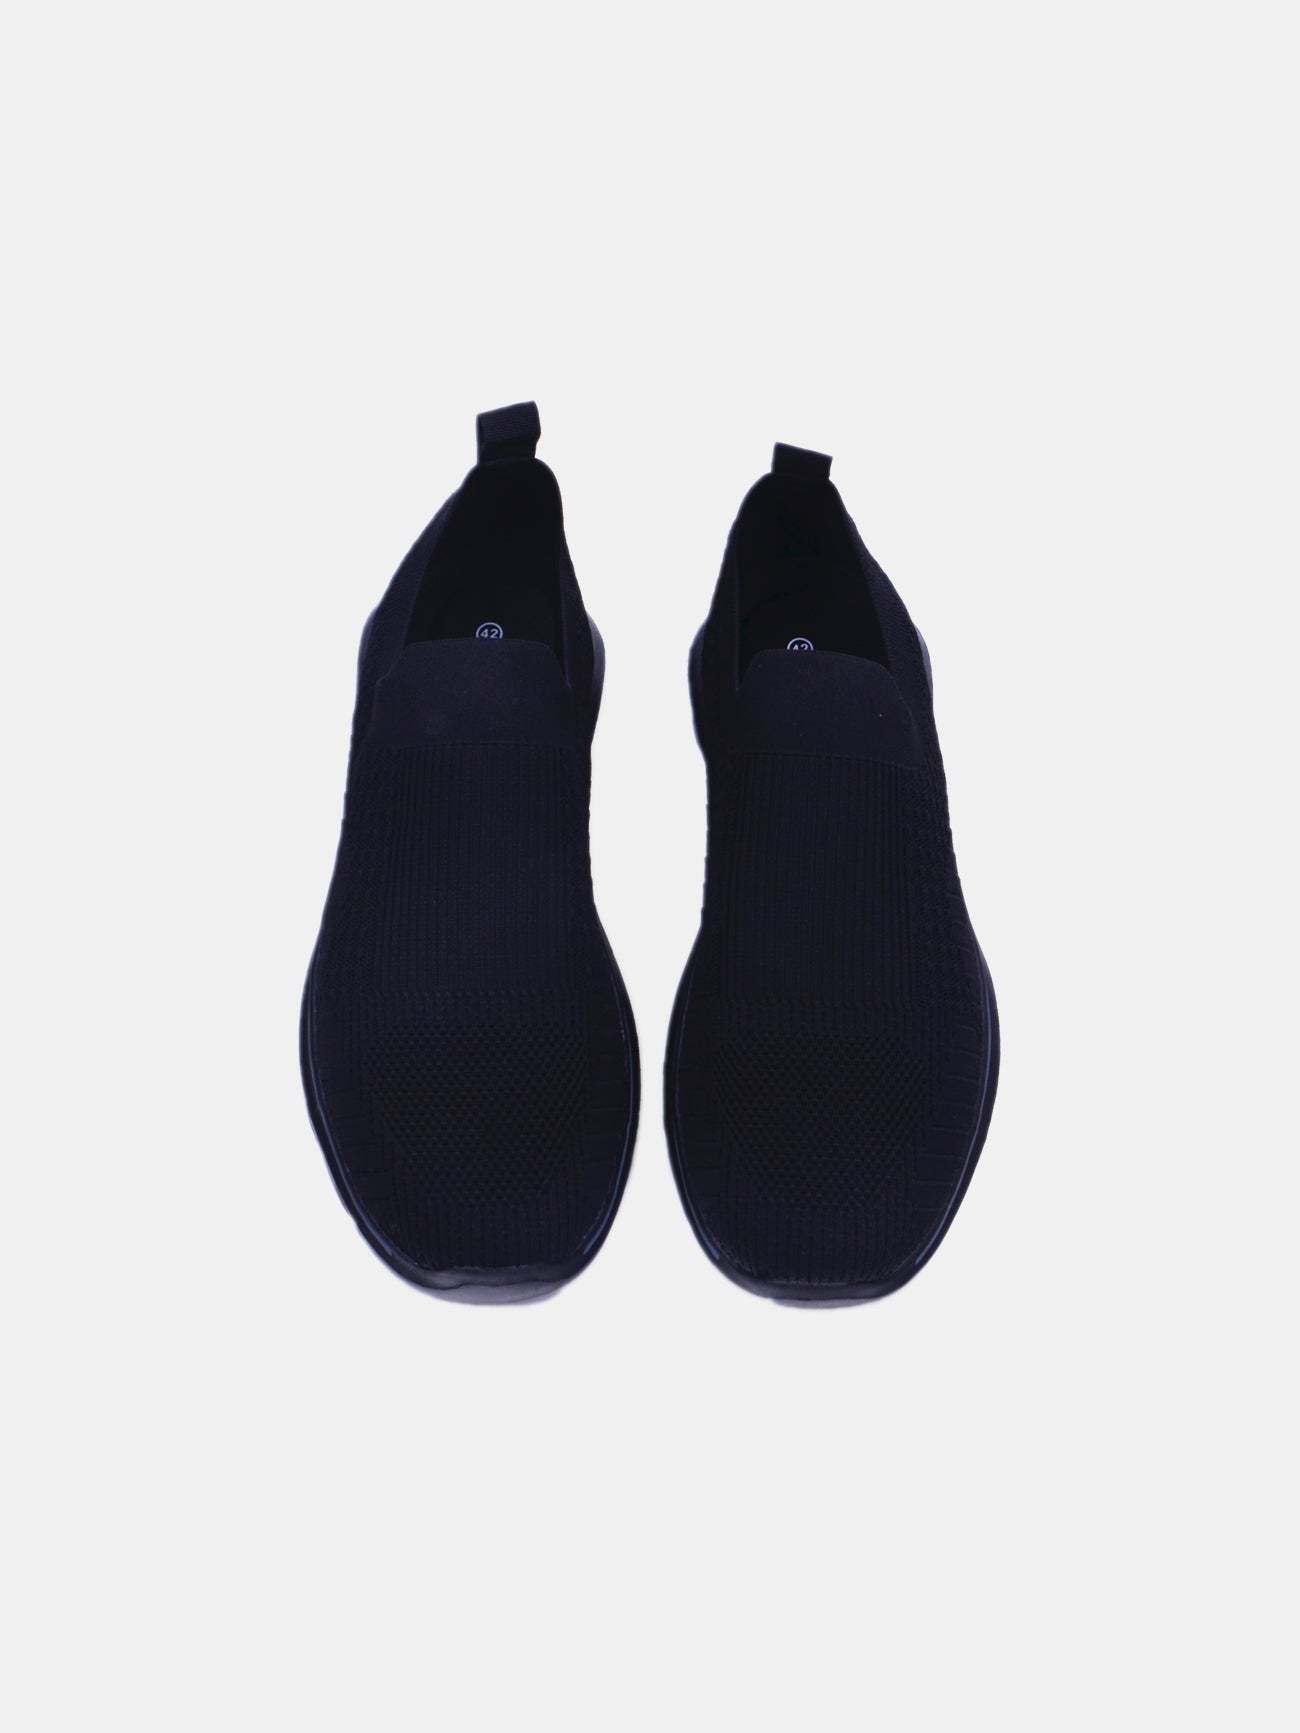 Barjeel Uno F35-034 Men's Casual Shoes